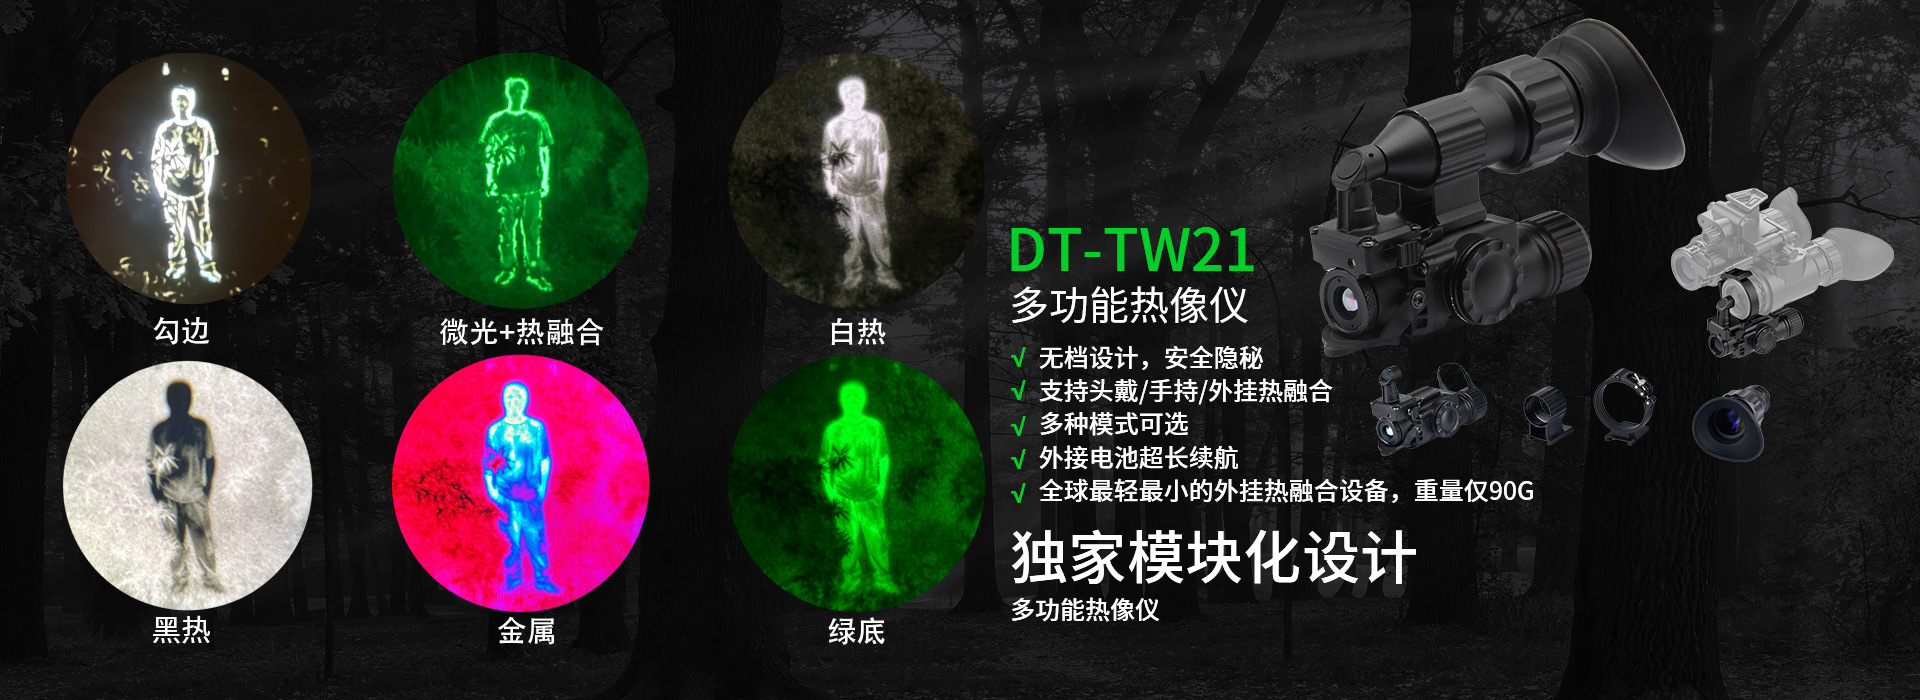 DT-TW21-(2)